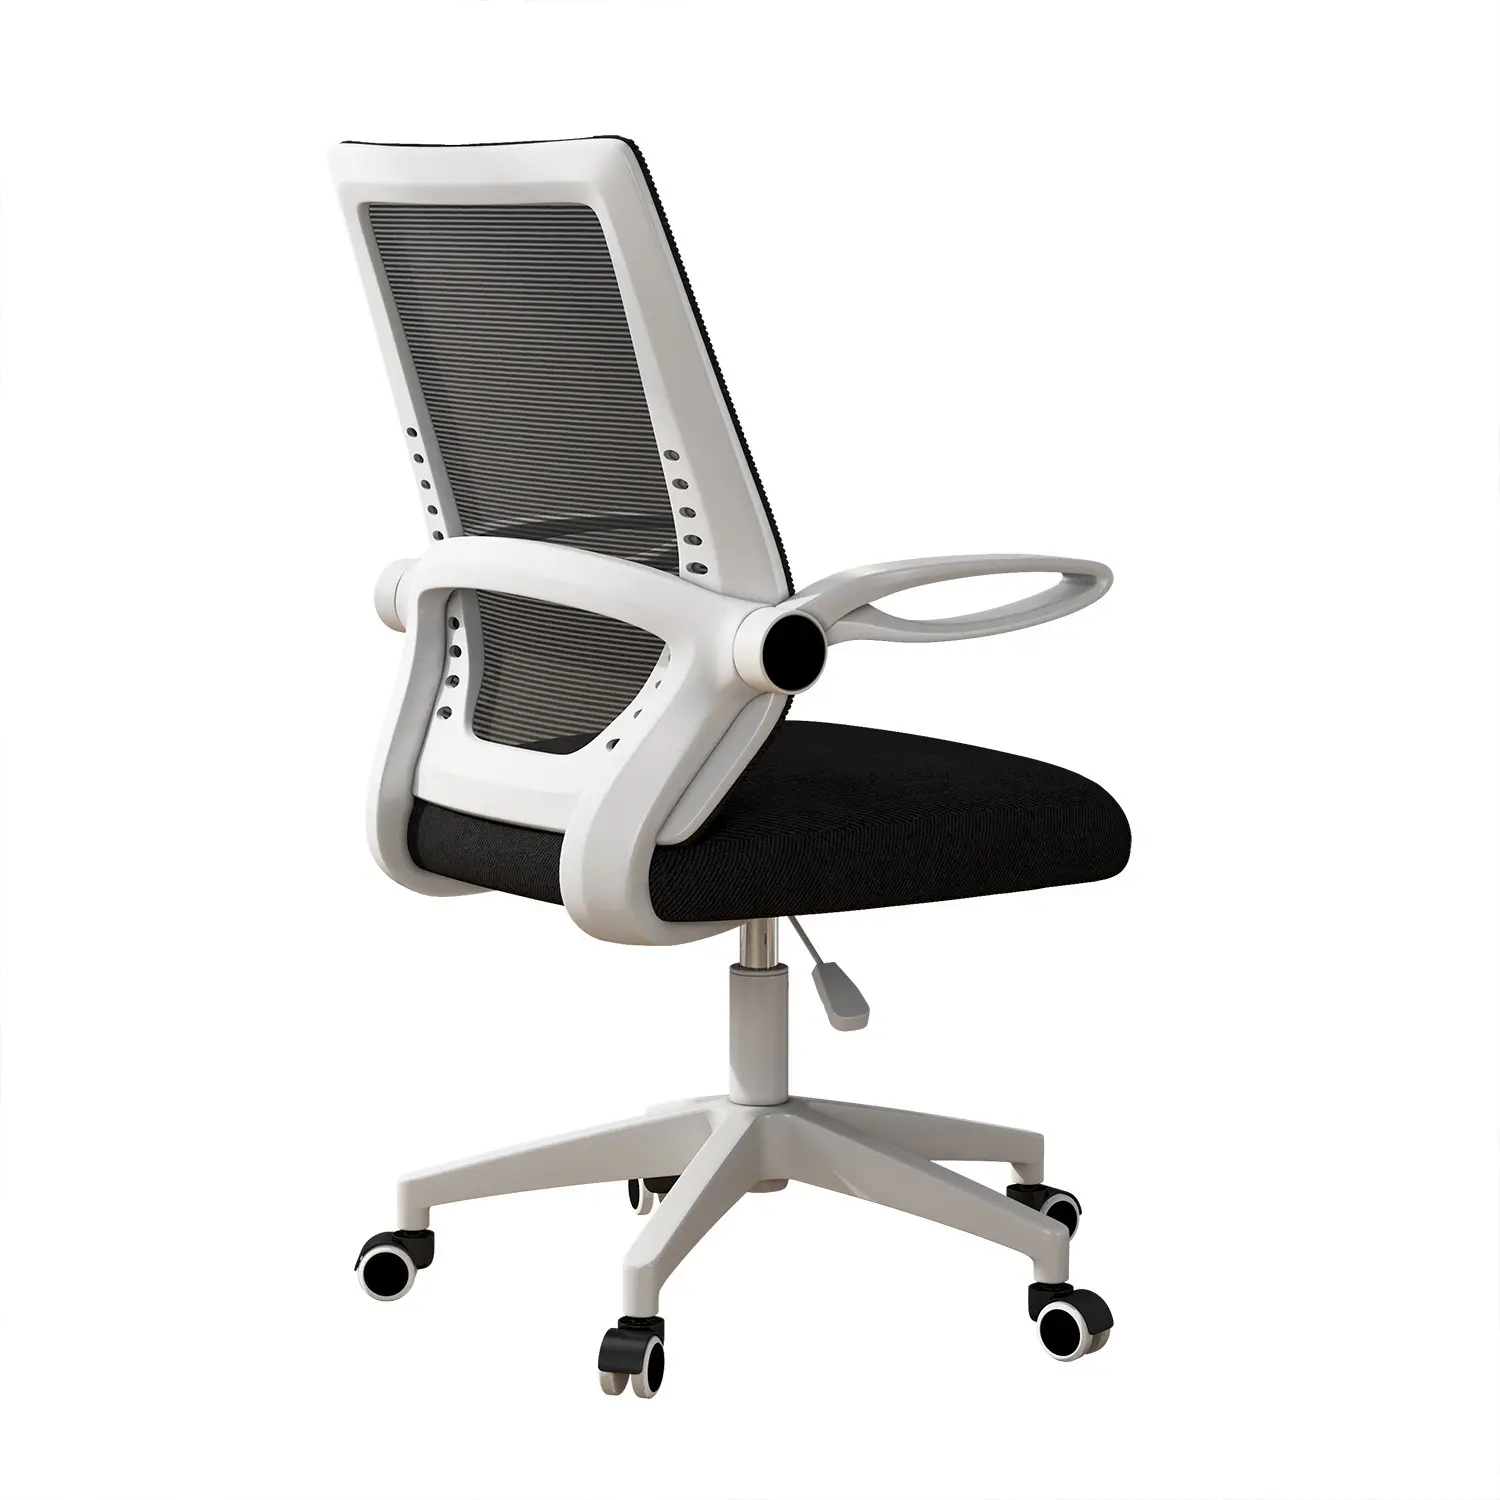 Commercio all'ingrosso moderno capo executive full mesh sedia da ufficio rotante in maglia ergonomica traspirante sedia da ufficio per la riunione dell'ufficio